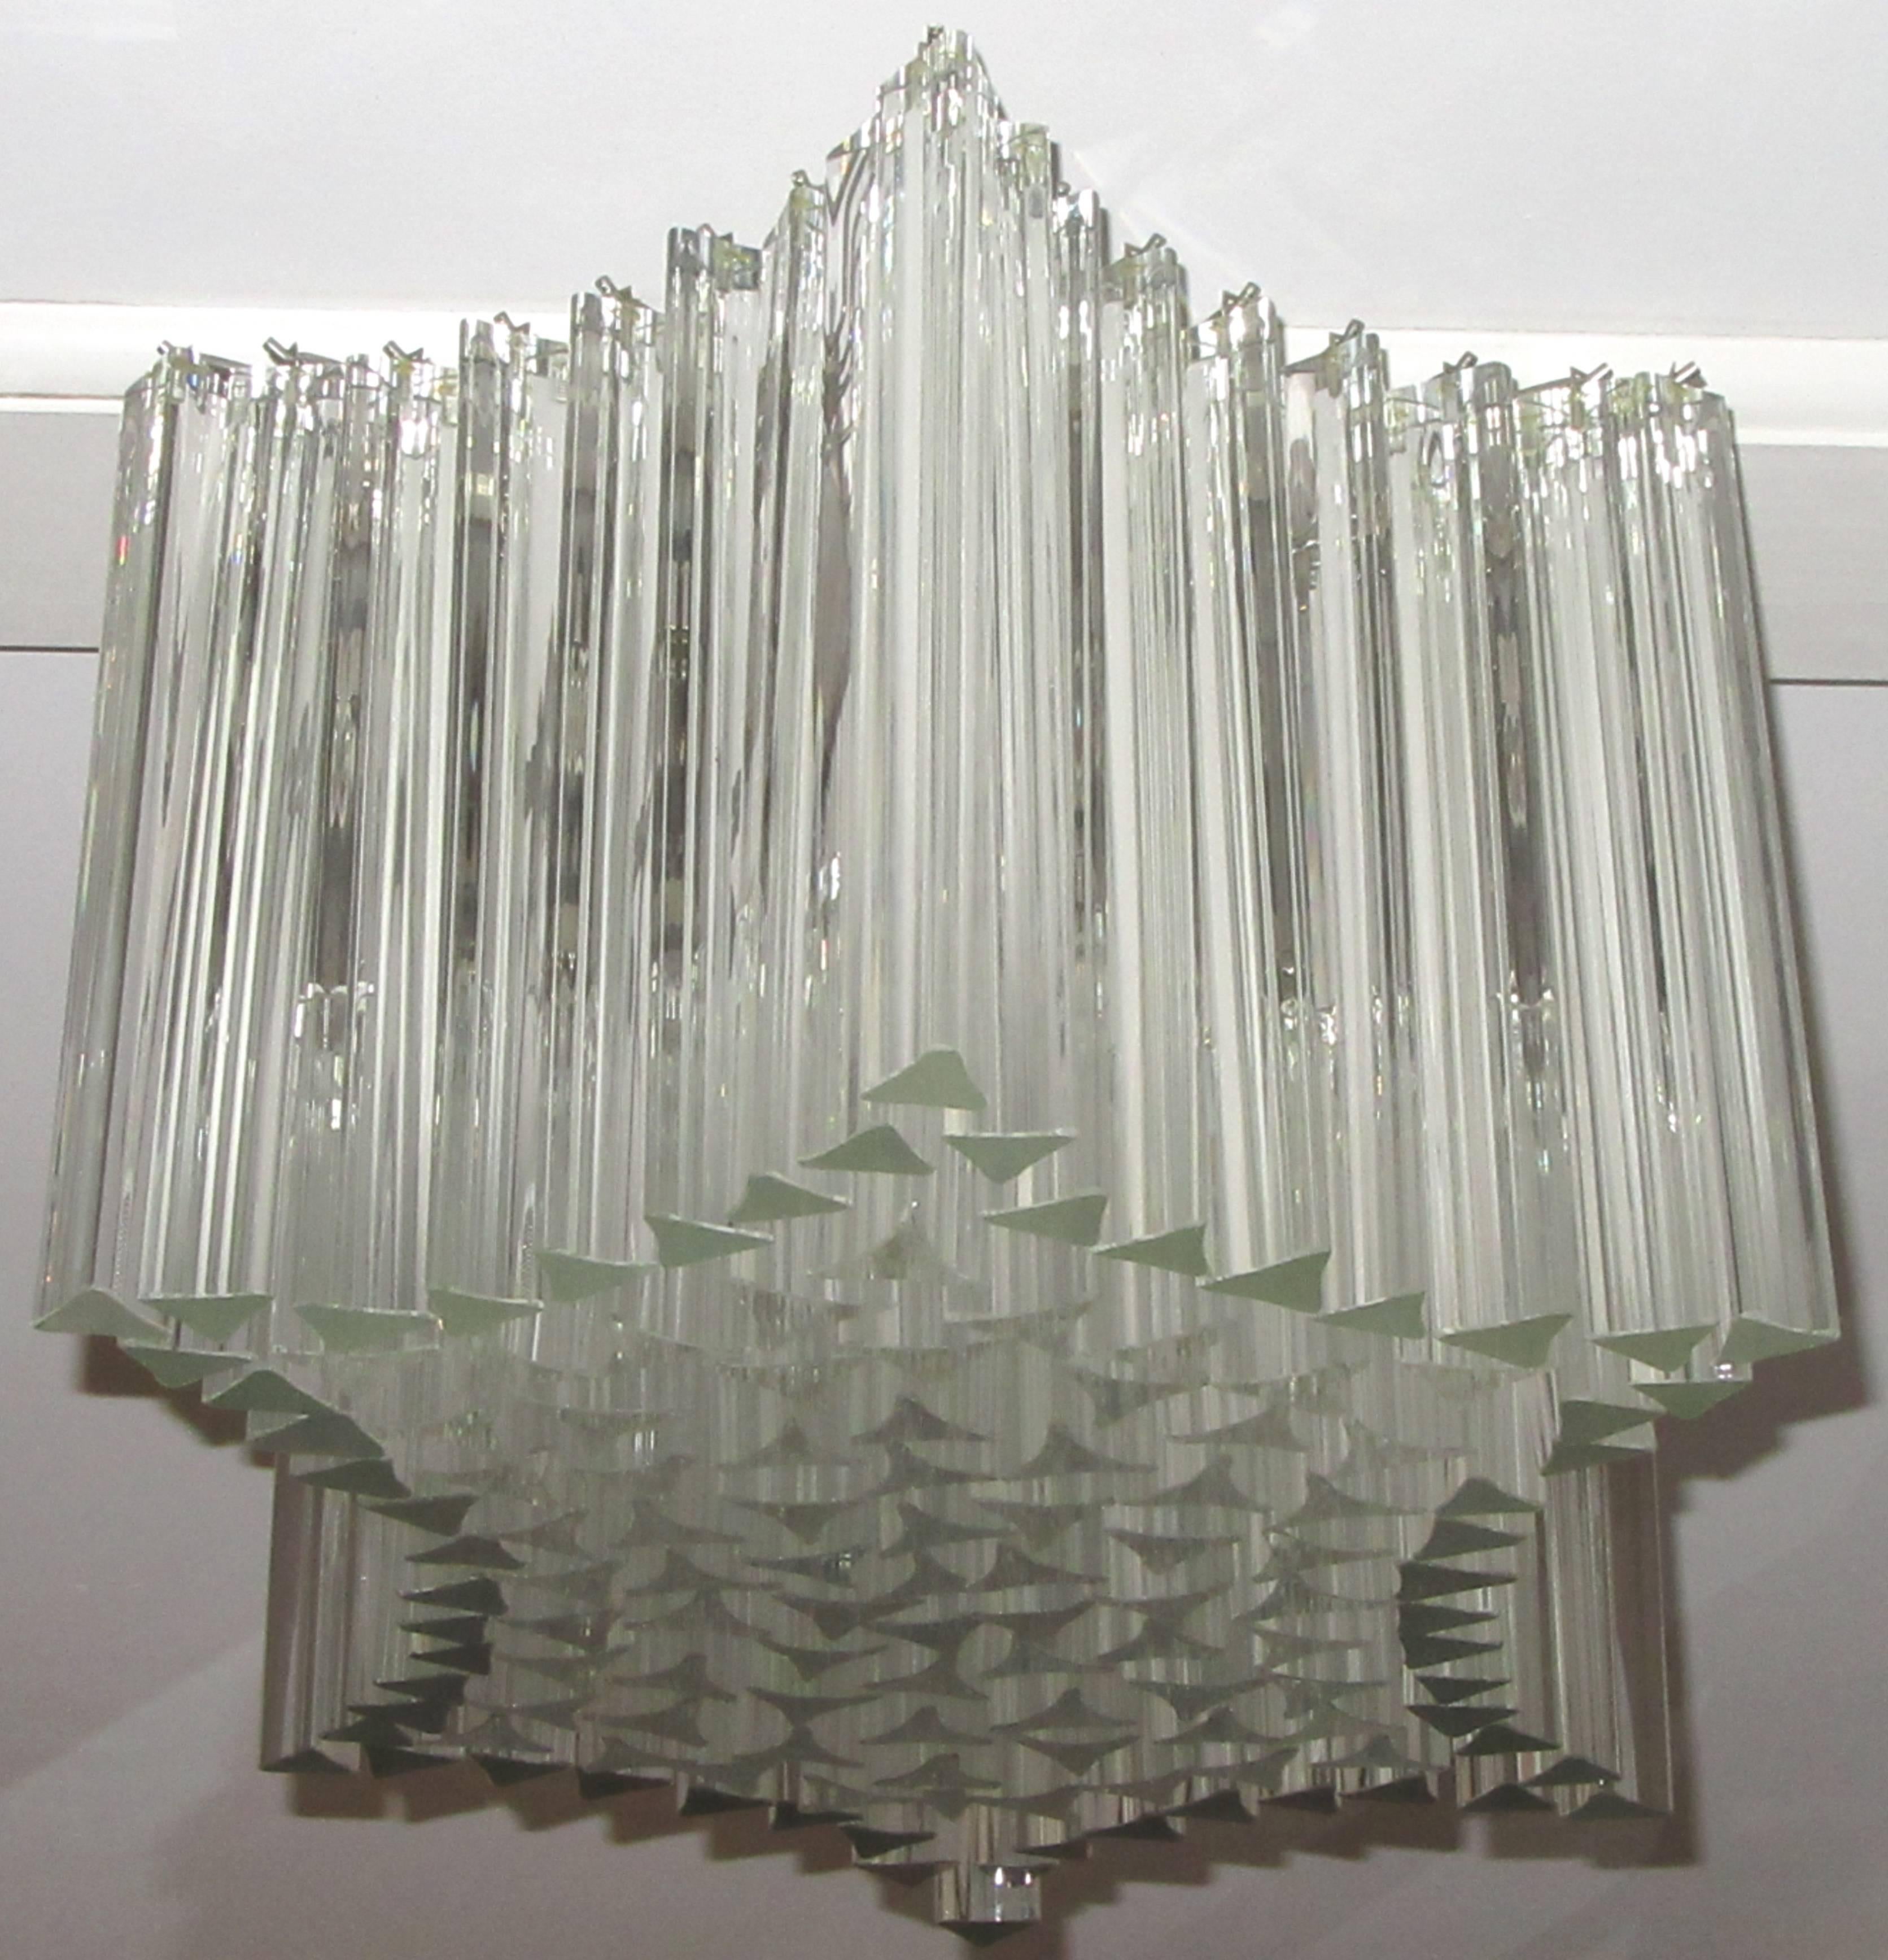 Ein großer Venini-Kronleuchter in Form eines Sechsecks, bestehend aus zwei großen Glasprismen, aufgehängt an einem Metallrahmen. Sechs Standard-Lichtsteckdosen innerhalb des Käfigs aus Glasprismen sorgen für eine große Lichtmenge.